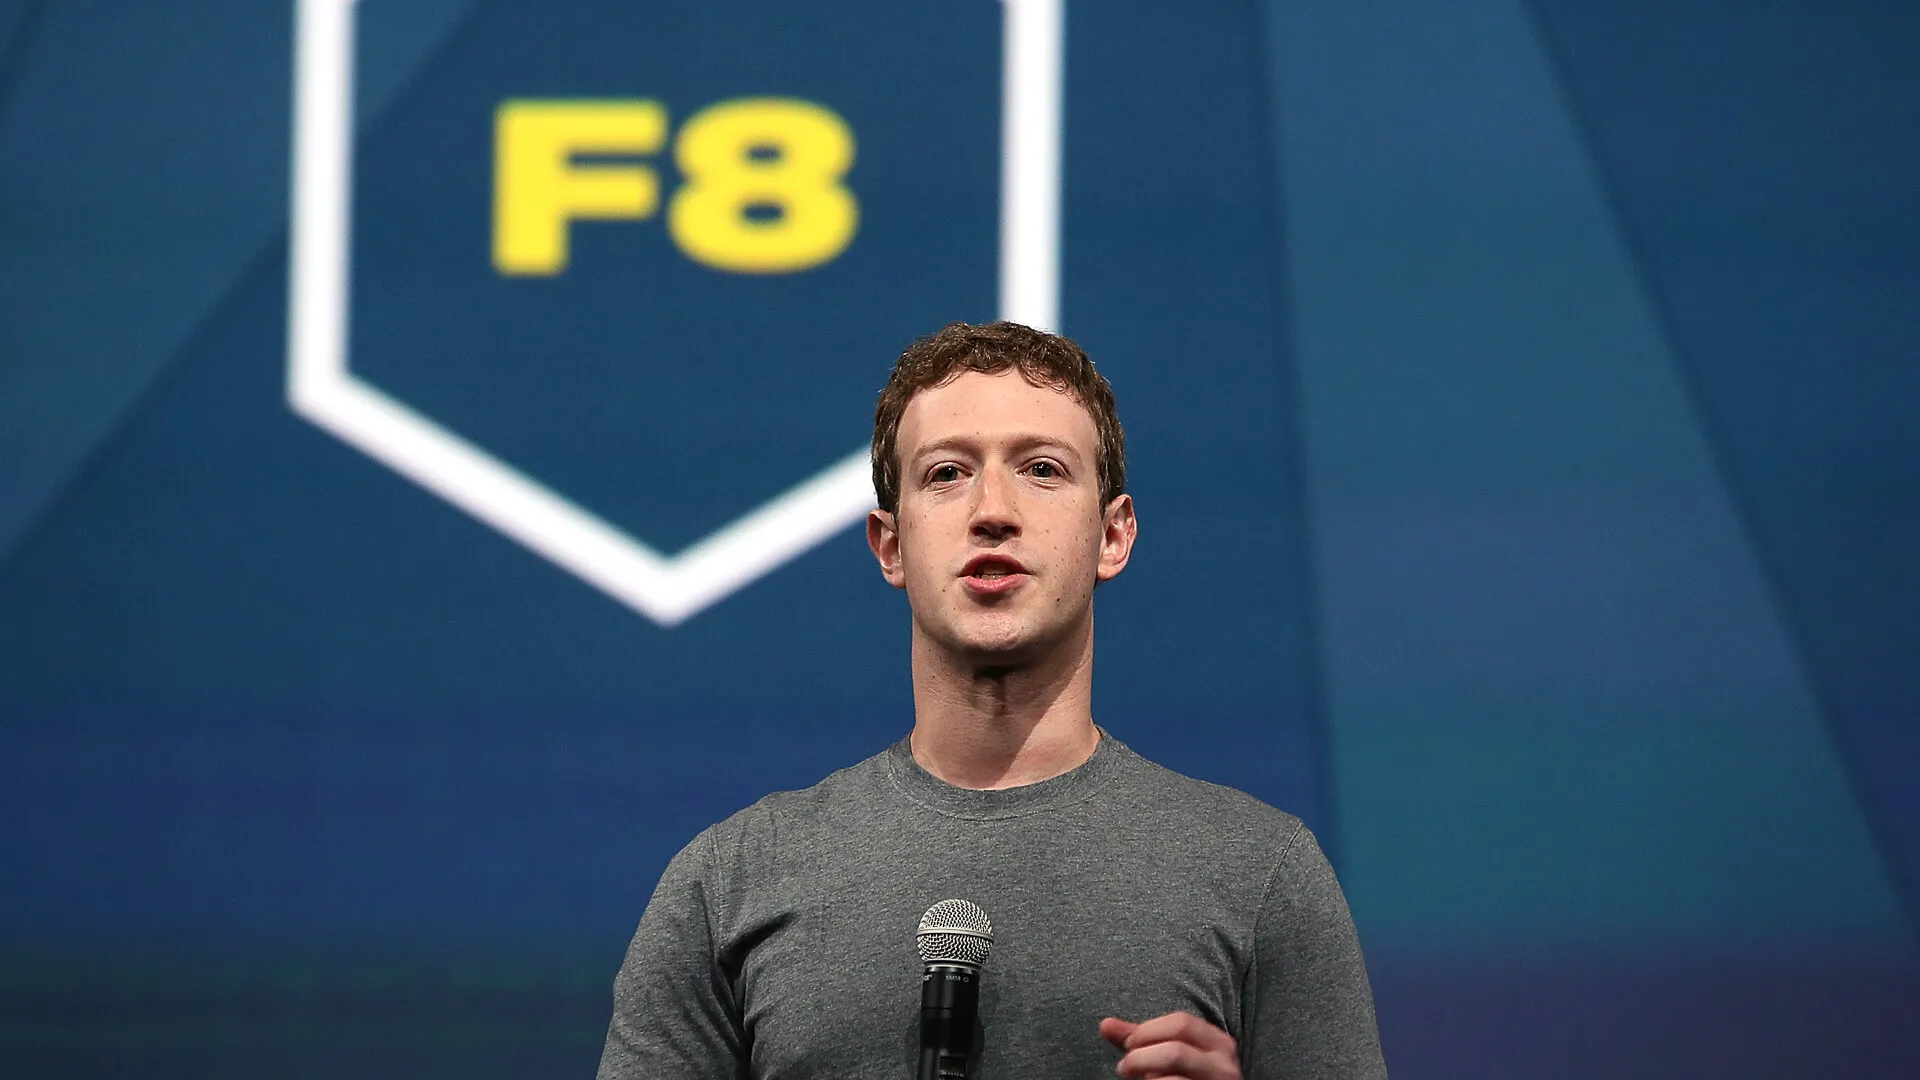 Facebook首席执行官马克·扎克伯格在Facebook提供的开幕式主题f8